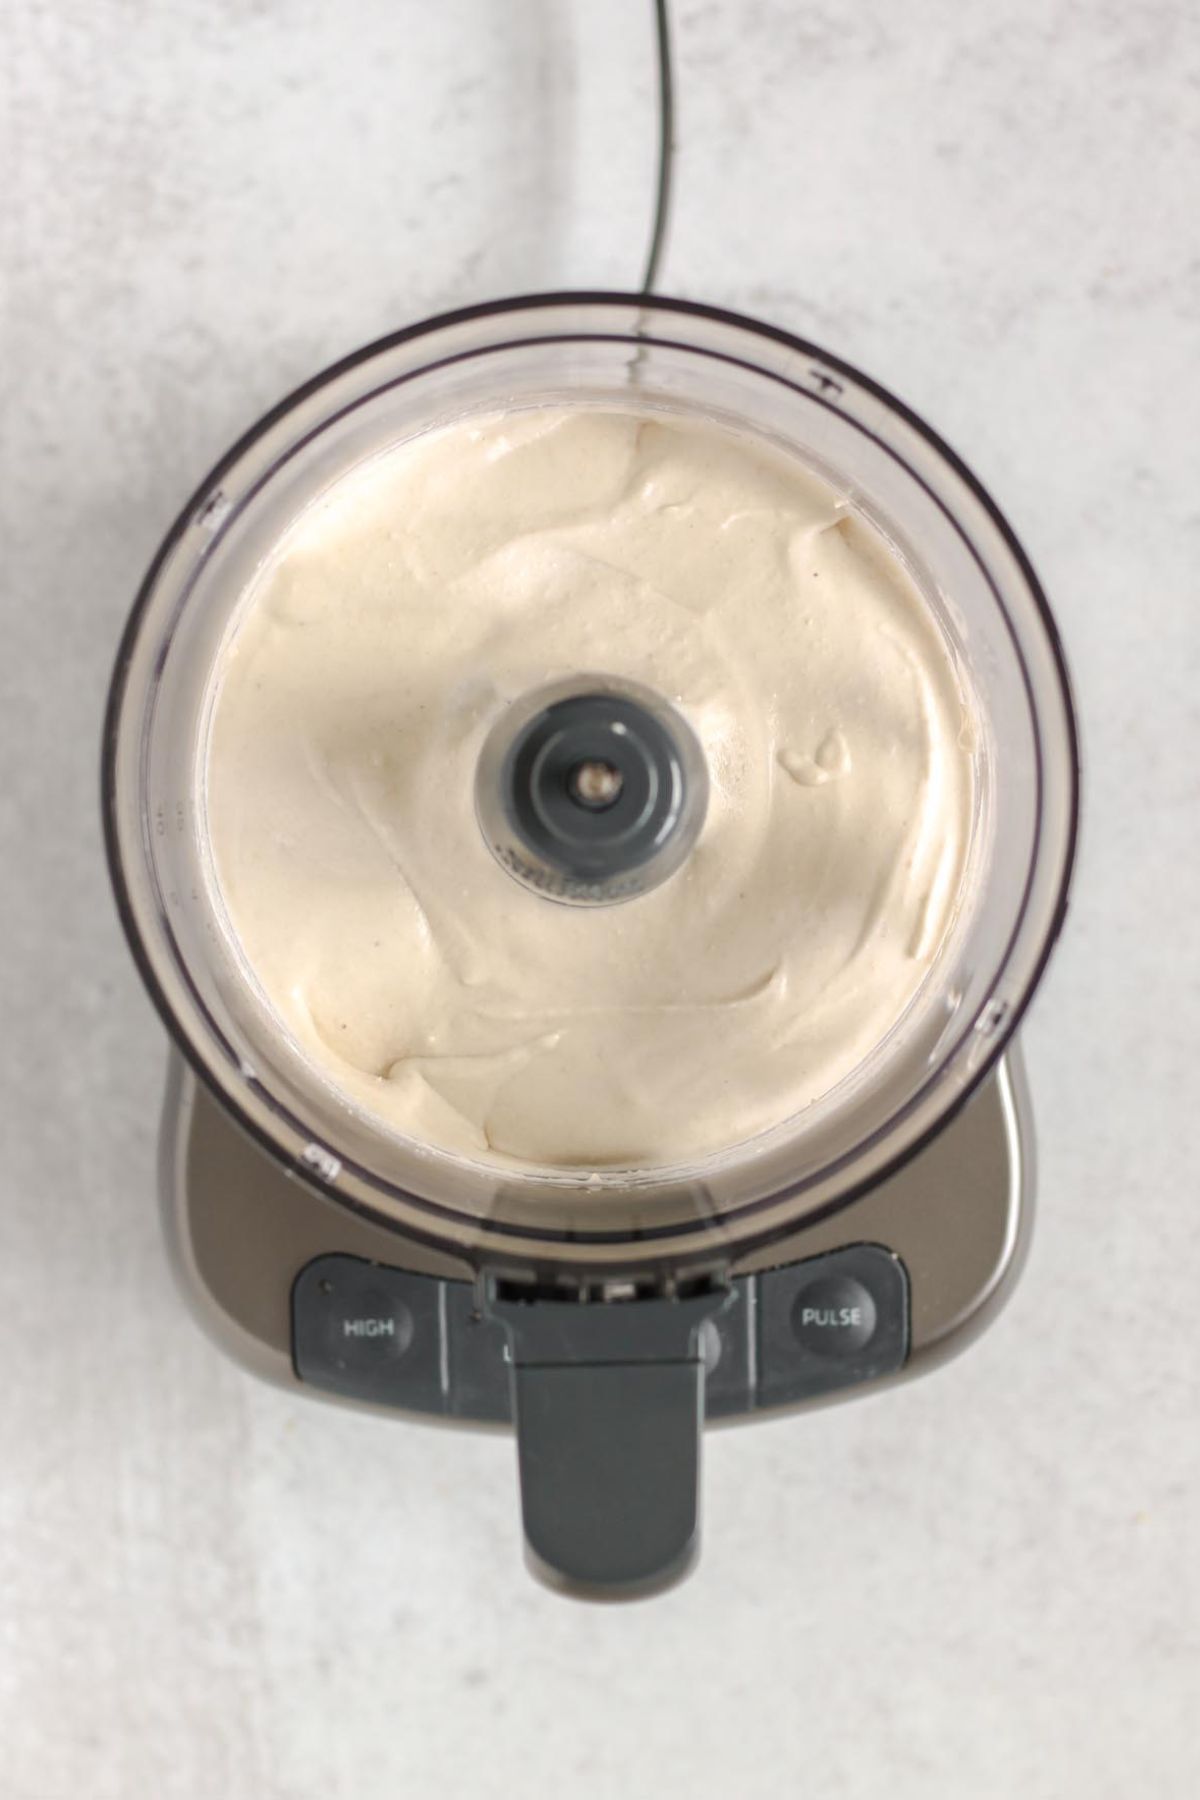 Coconut cream filling in a food processor.